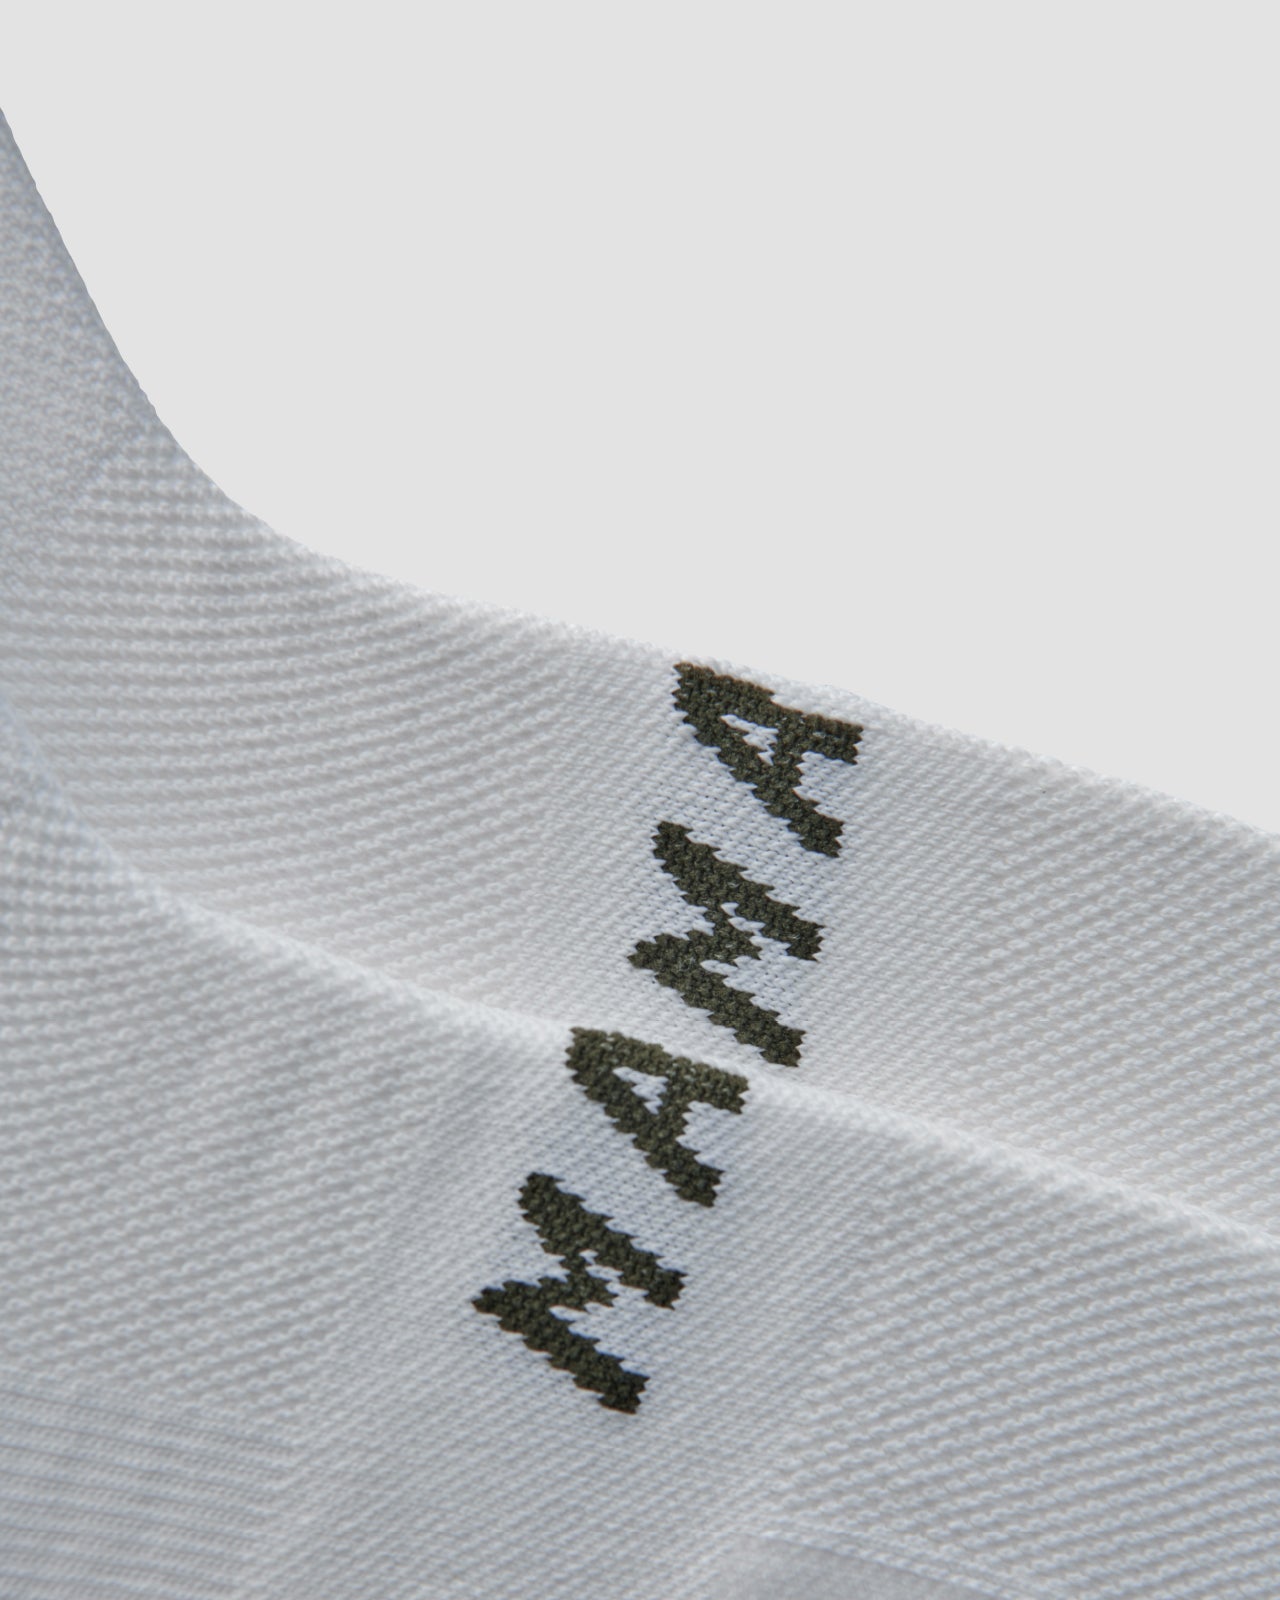 MAAP Form Sock - White